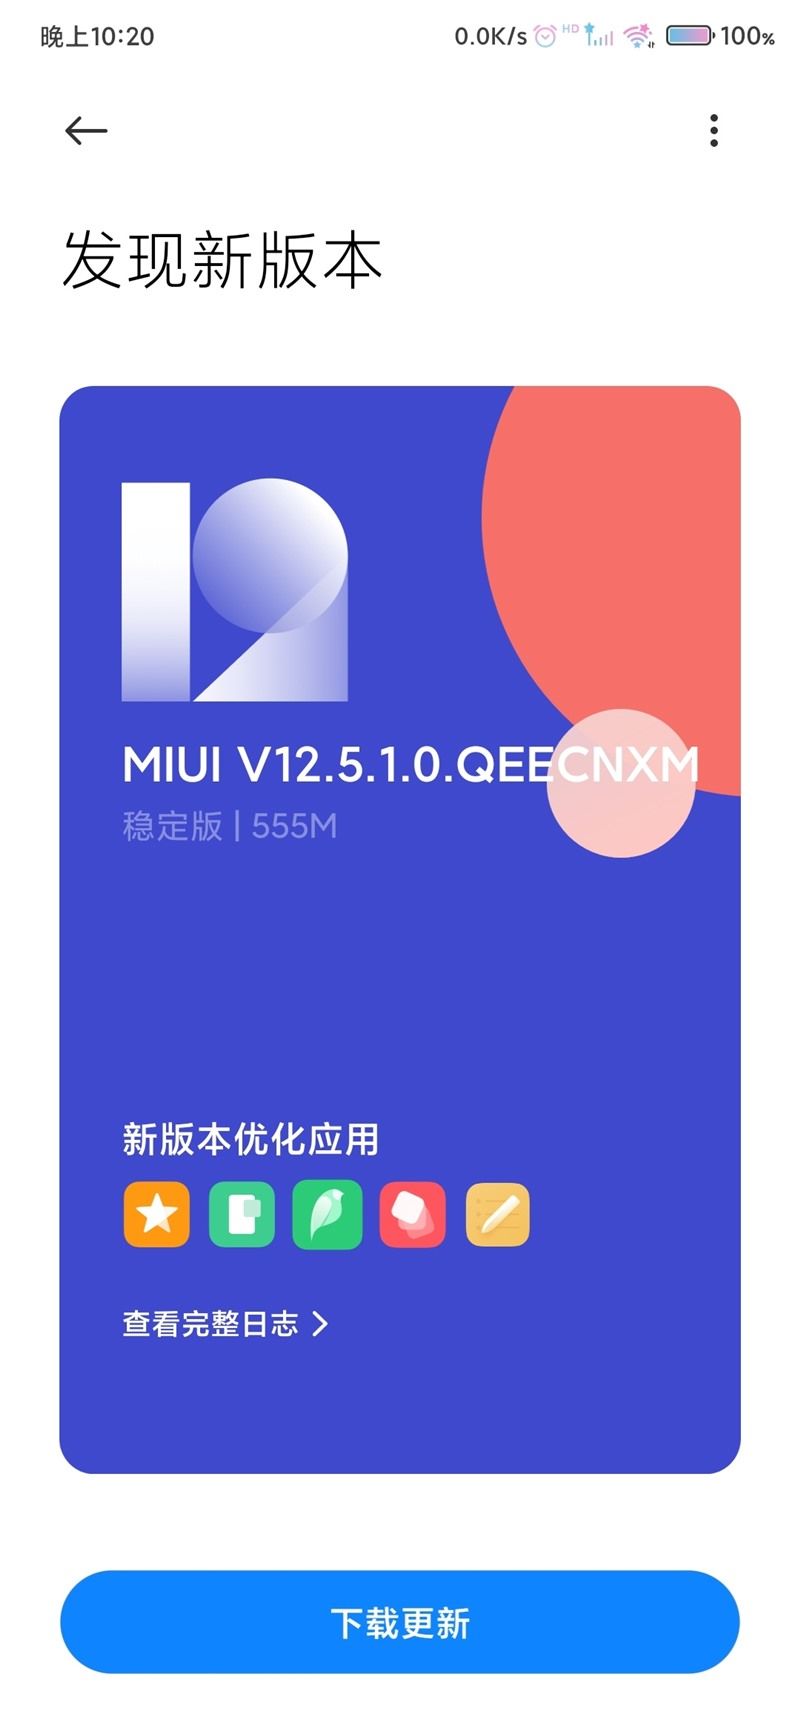 毫安|小米 MIX 3 推送 MIUI 12.5 稳定版更新